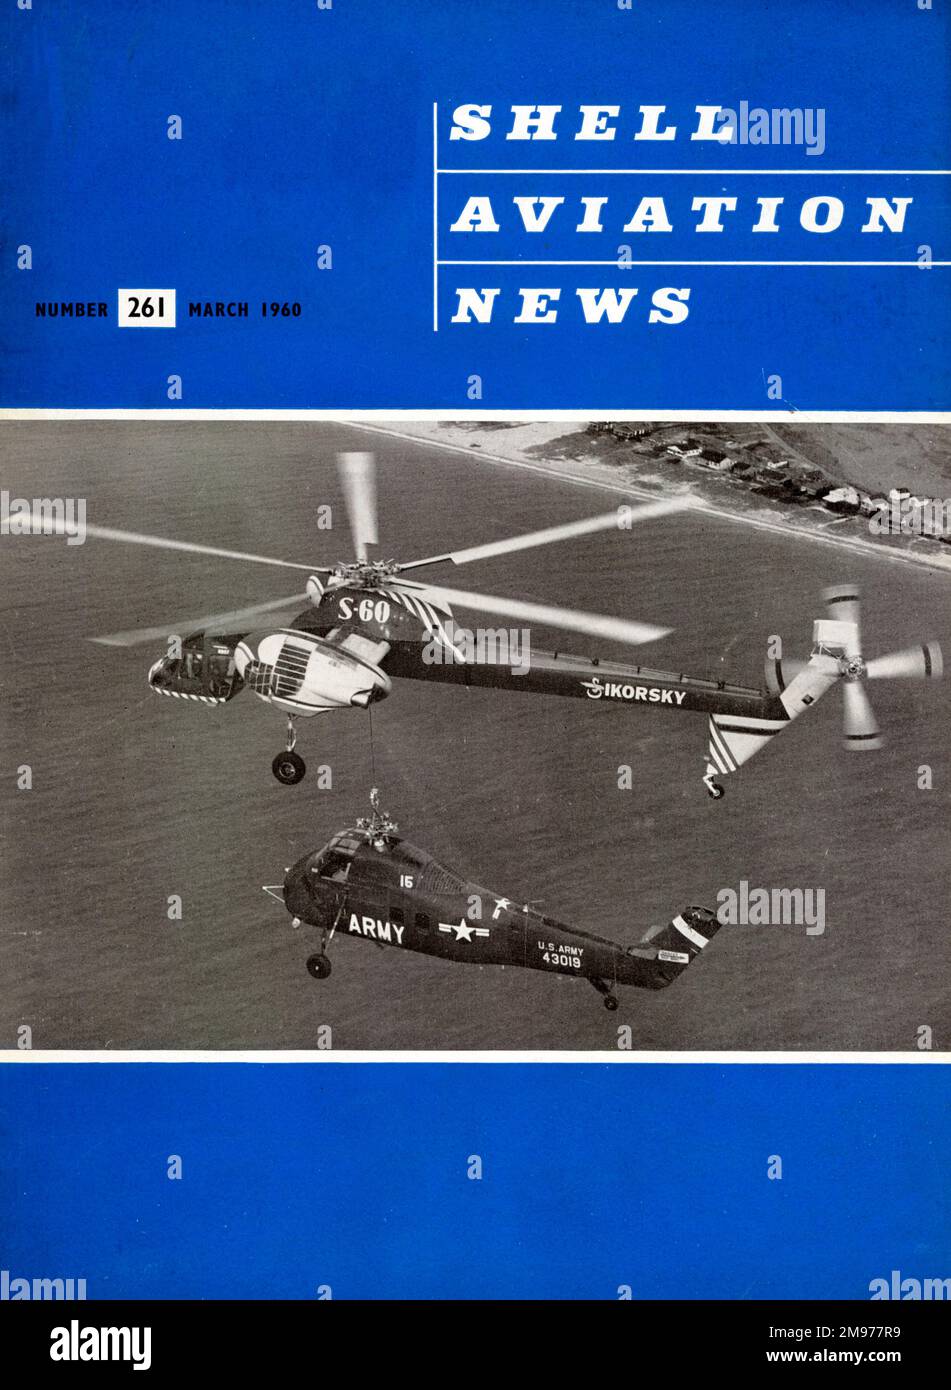 La couverture de Shell Aviation News, mars 1960, (261). Banque D'Images